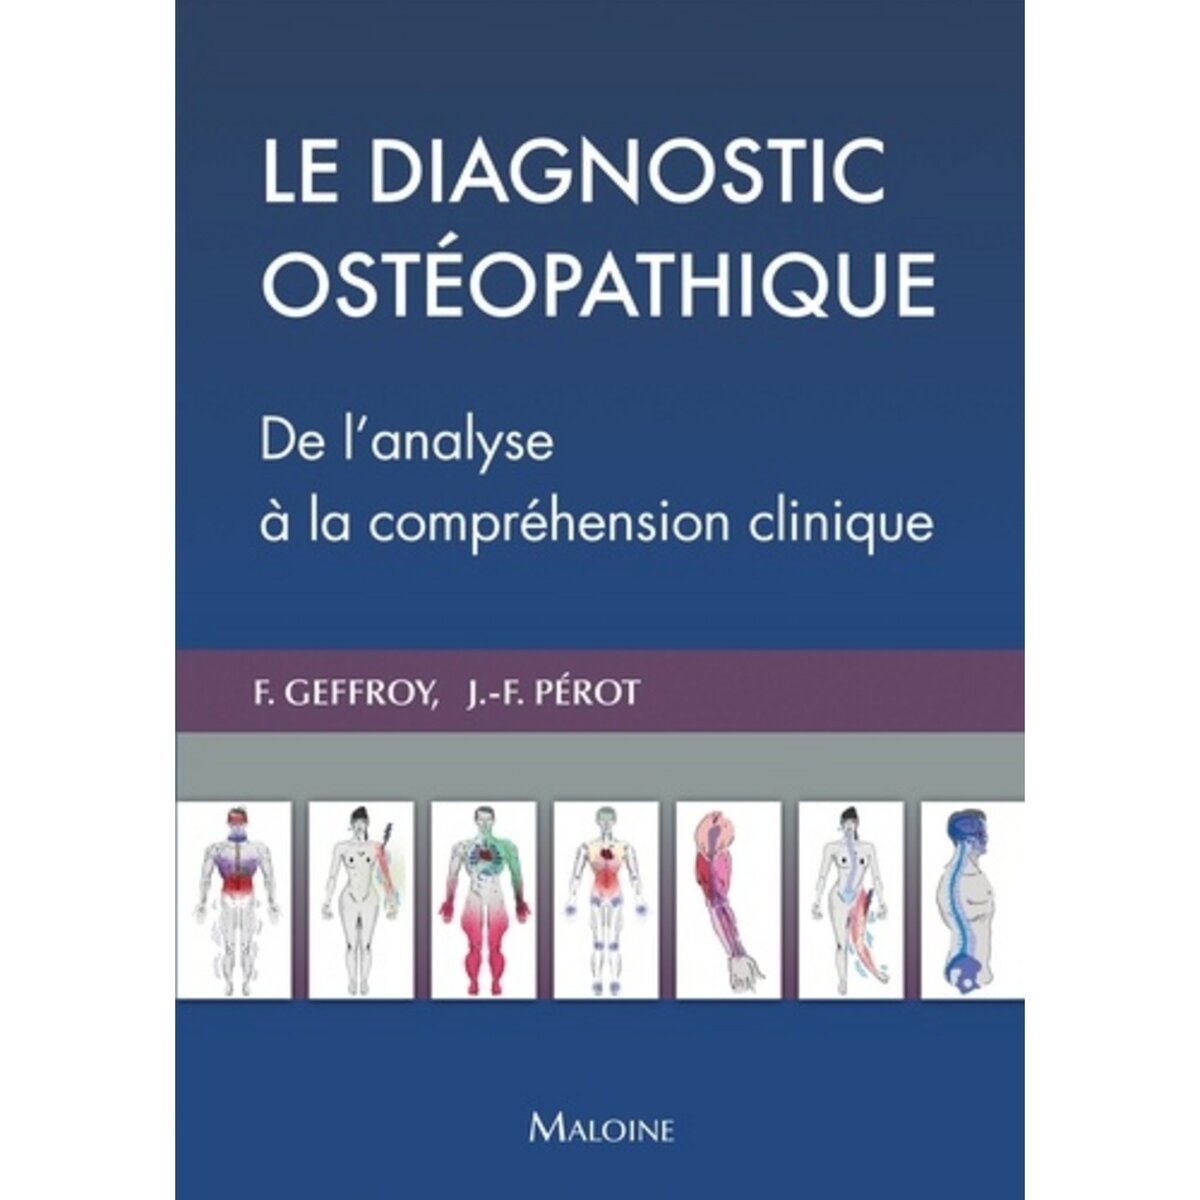  LE DIAGNOSTIC OSTEOPATHIQUE. DE L'ANALYSE A LA COMPREHENSION CLINIQUE, Geffroy Florian